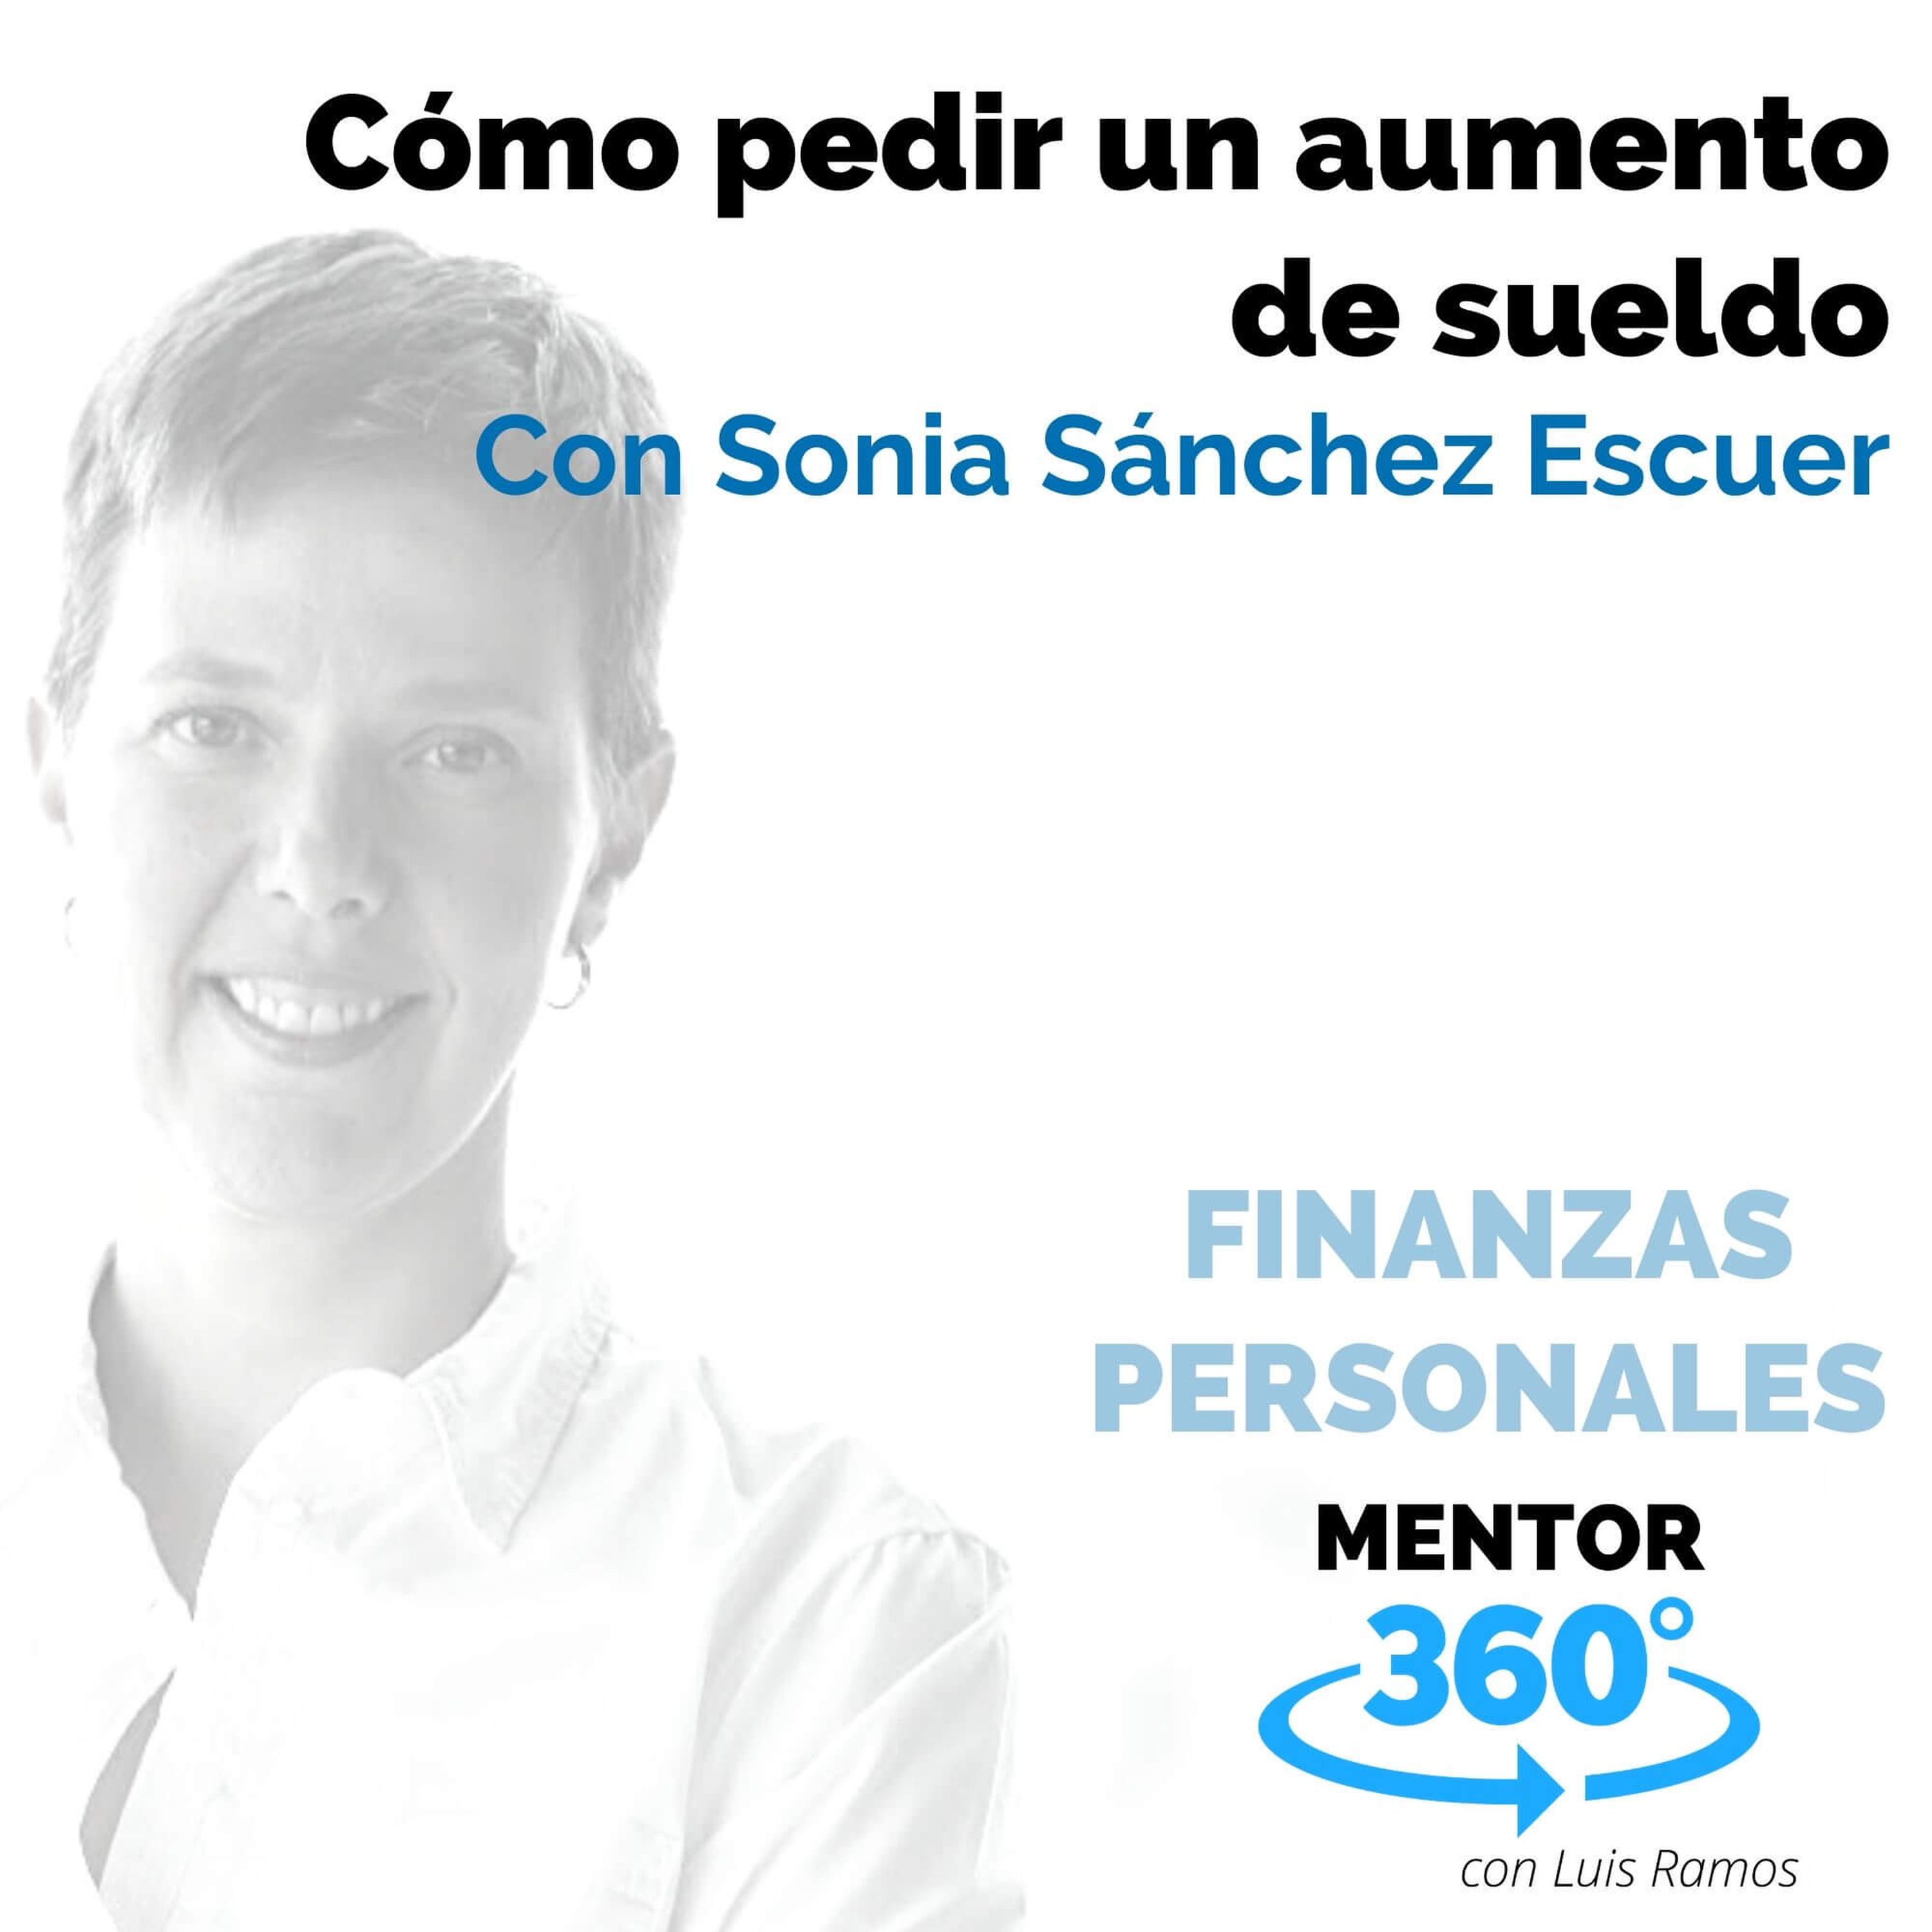 Cómo pedir un aumento de sueldo, con Sonia Sánchez Escuer - FINANZAS PERSONALES